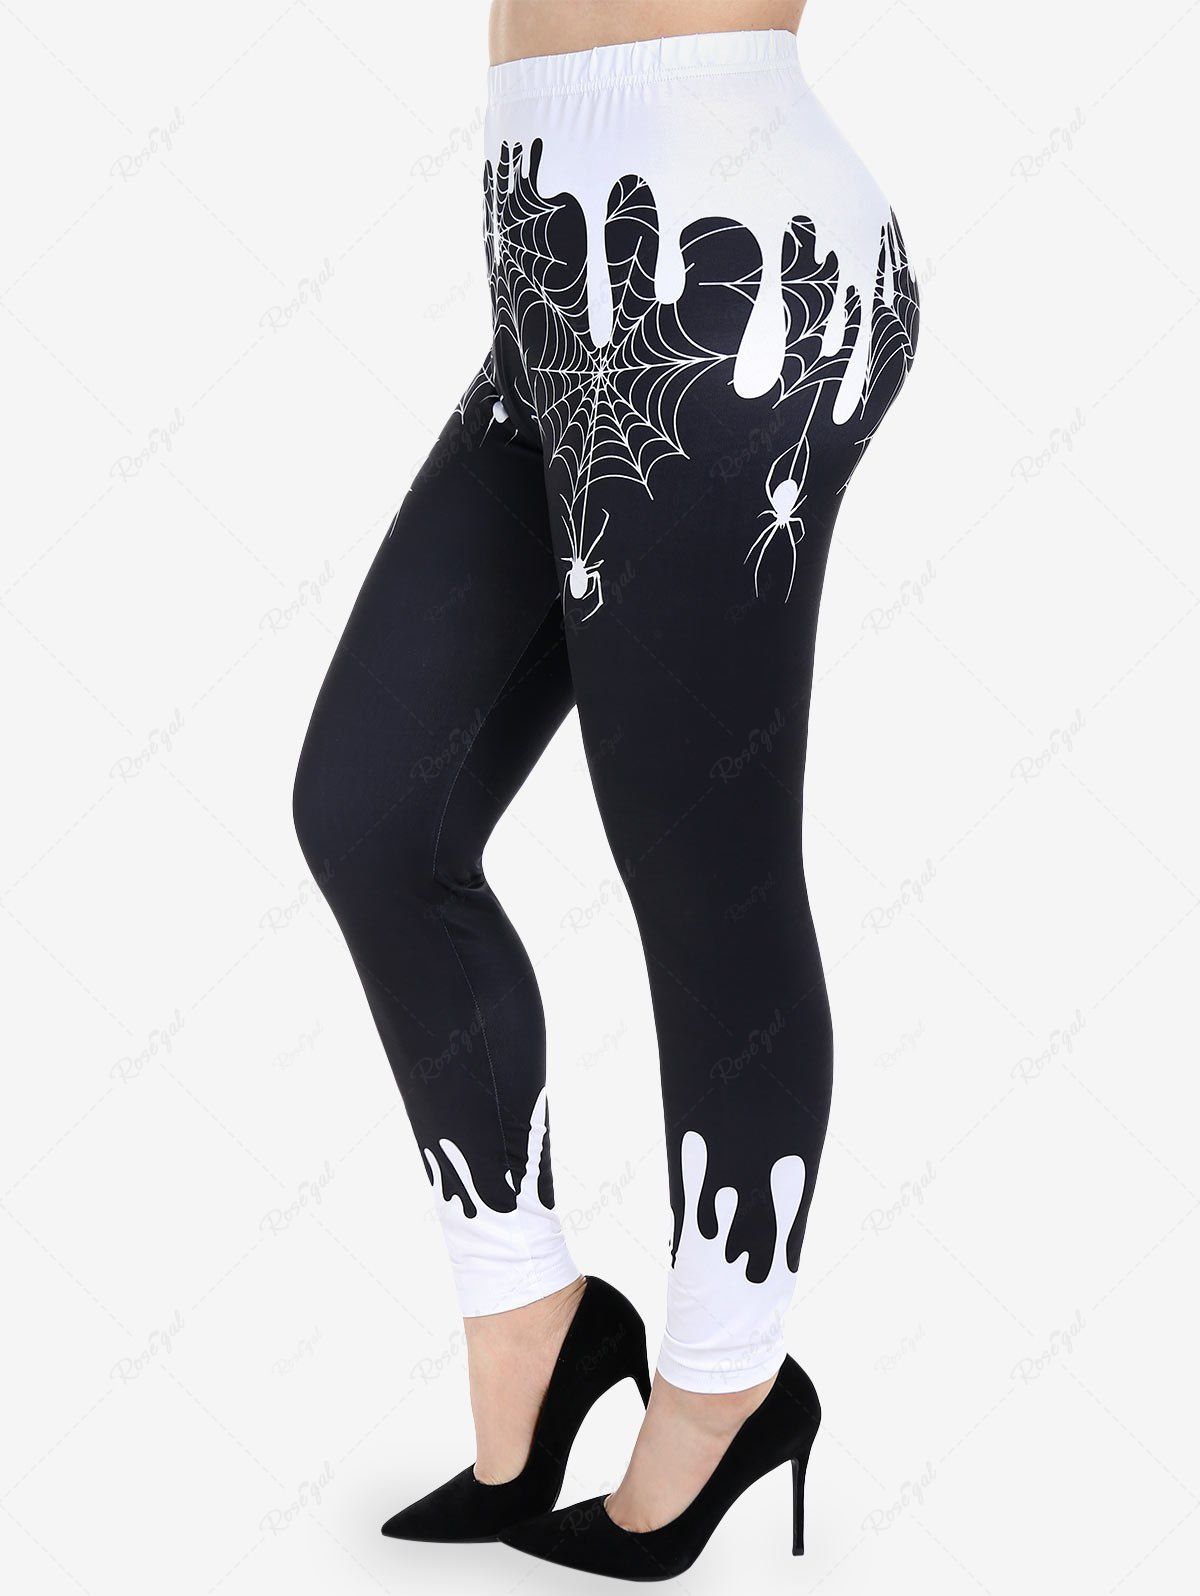 Discount Halloween Paint Drop Blobs Spider Web Colorblock Printed Skinny Leggings  